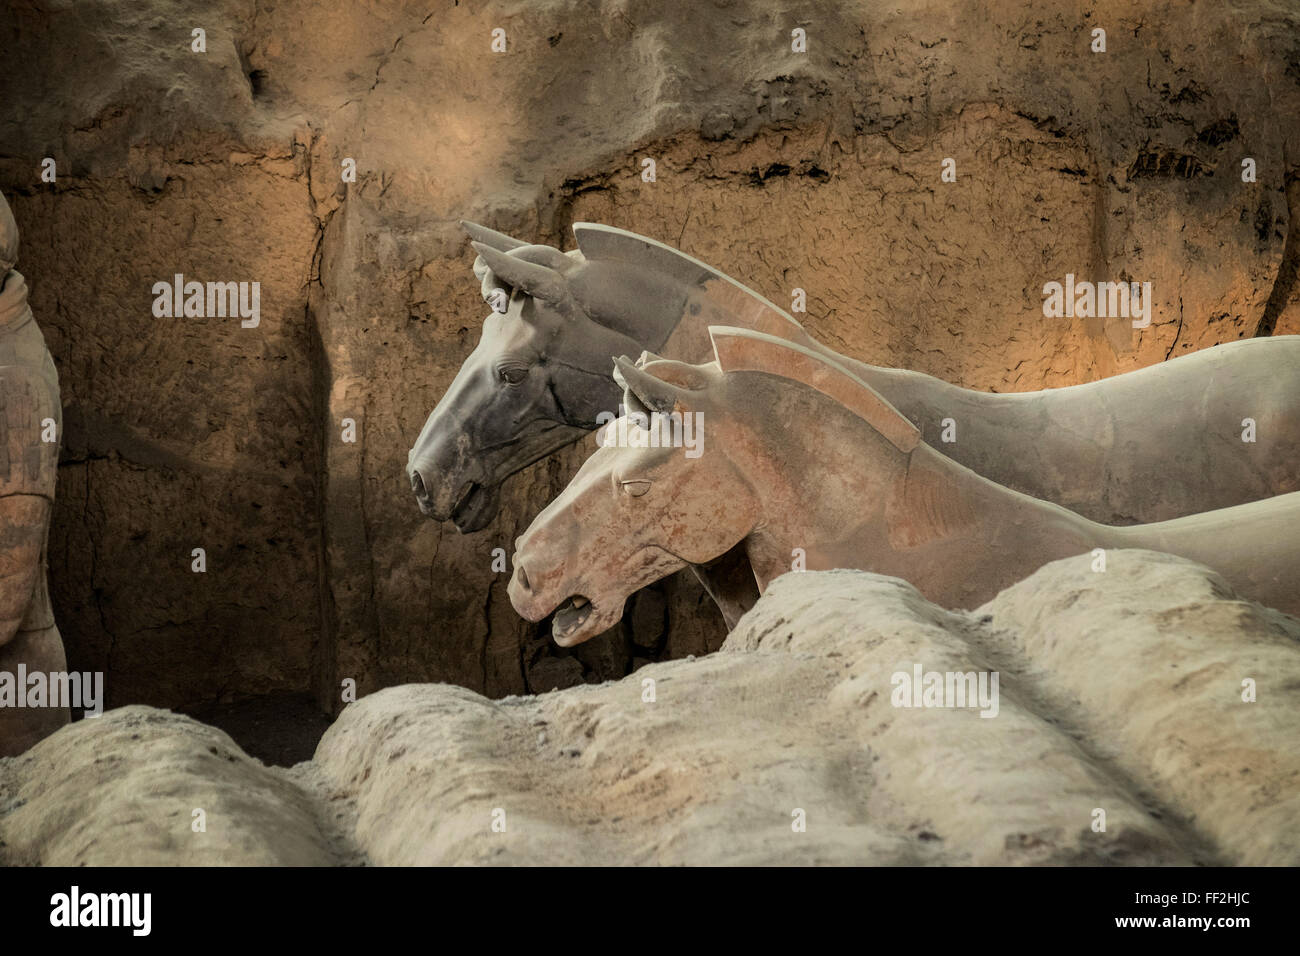 Pferde, Terrakotta-Armee, UNESCO WorRMd Heritage Site, Xian, Shaanxi, China, Asien Stockfoto